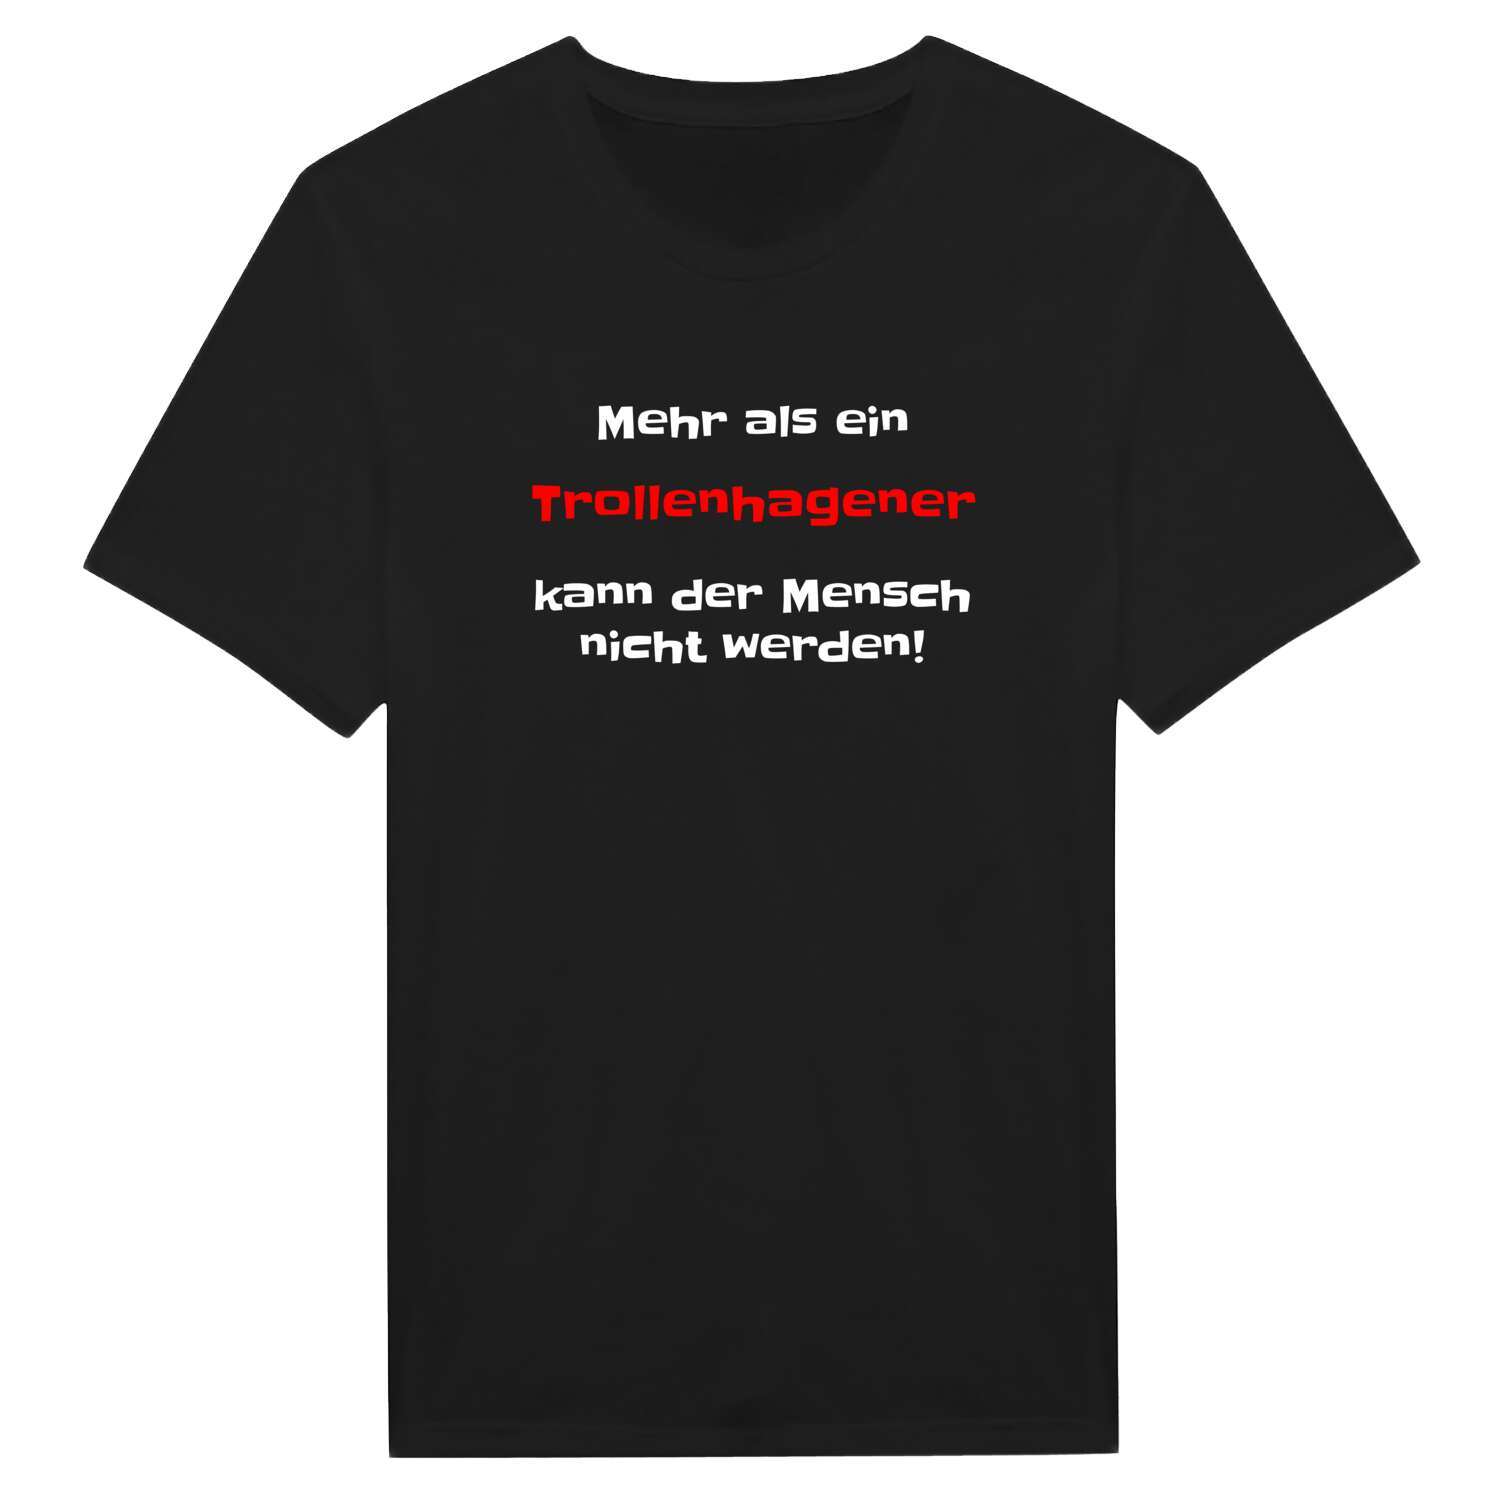 Trollenhagen T-Shirt »Mehr als ein«